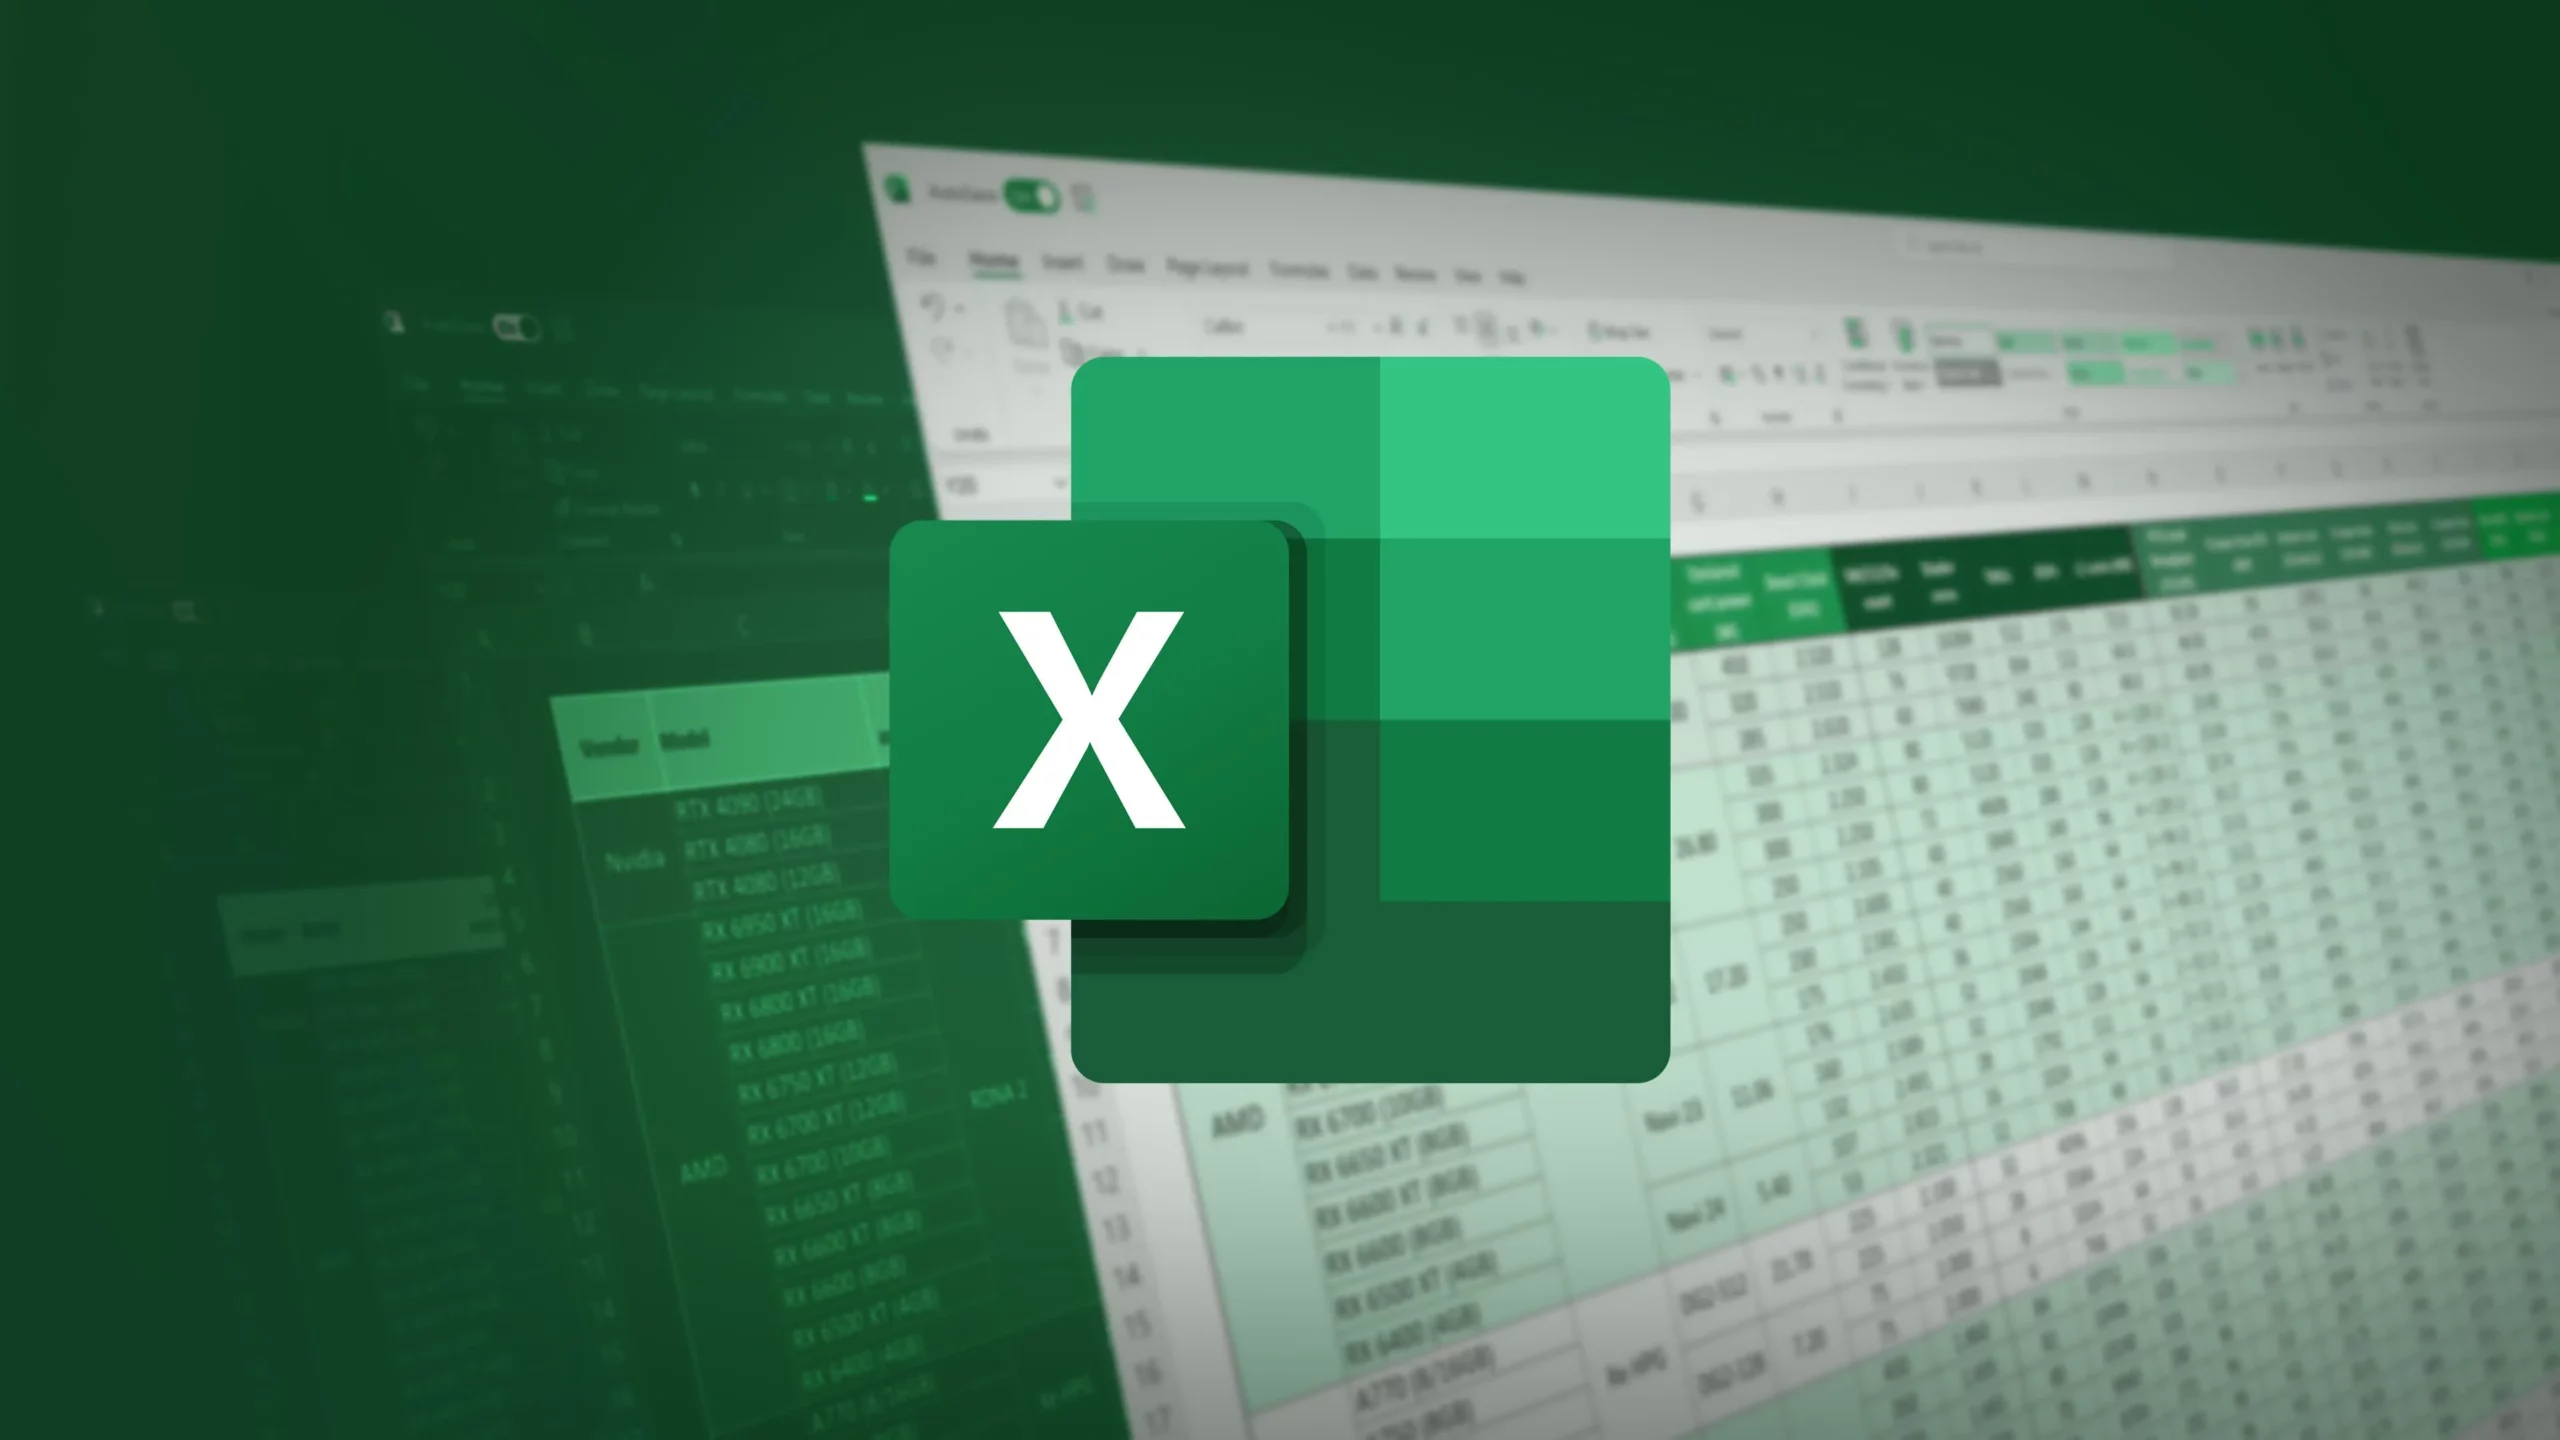 Cómo contar celdas con texto en Microsoft Excel